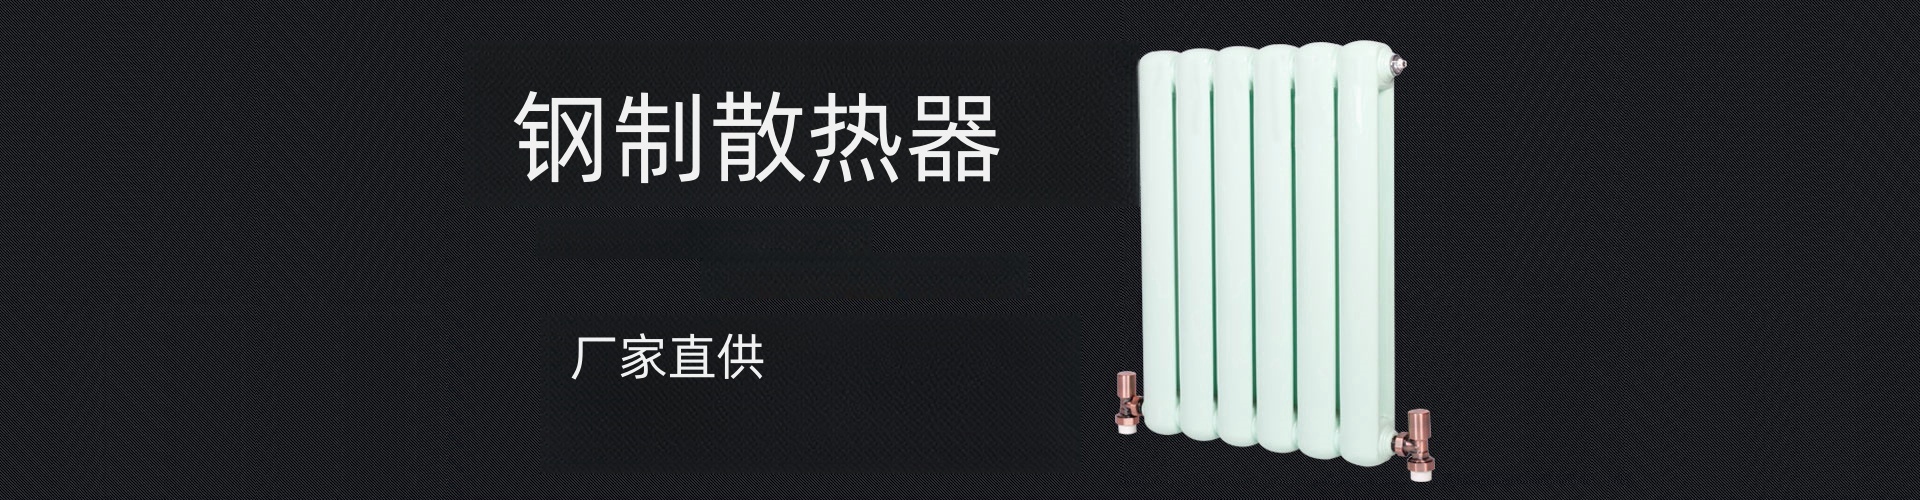 美特美家散热器|北京美特美家暖通设备有限公司